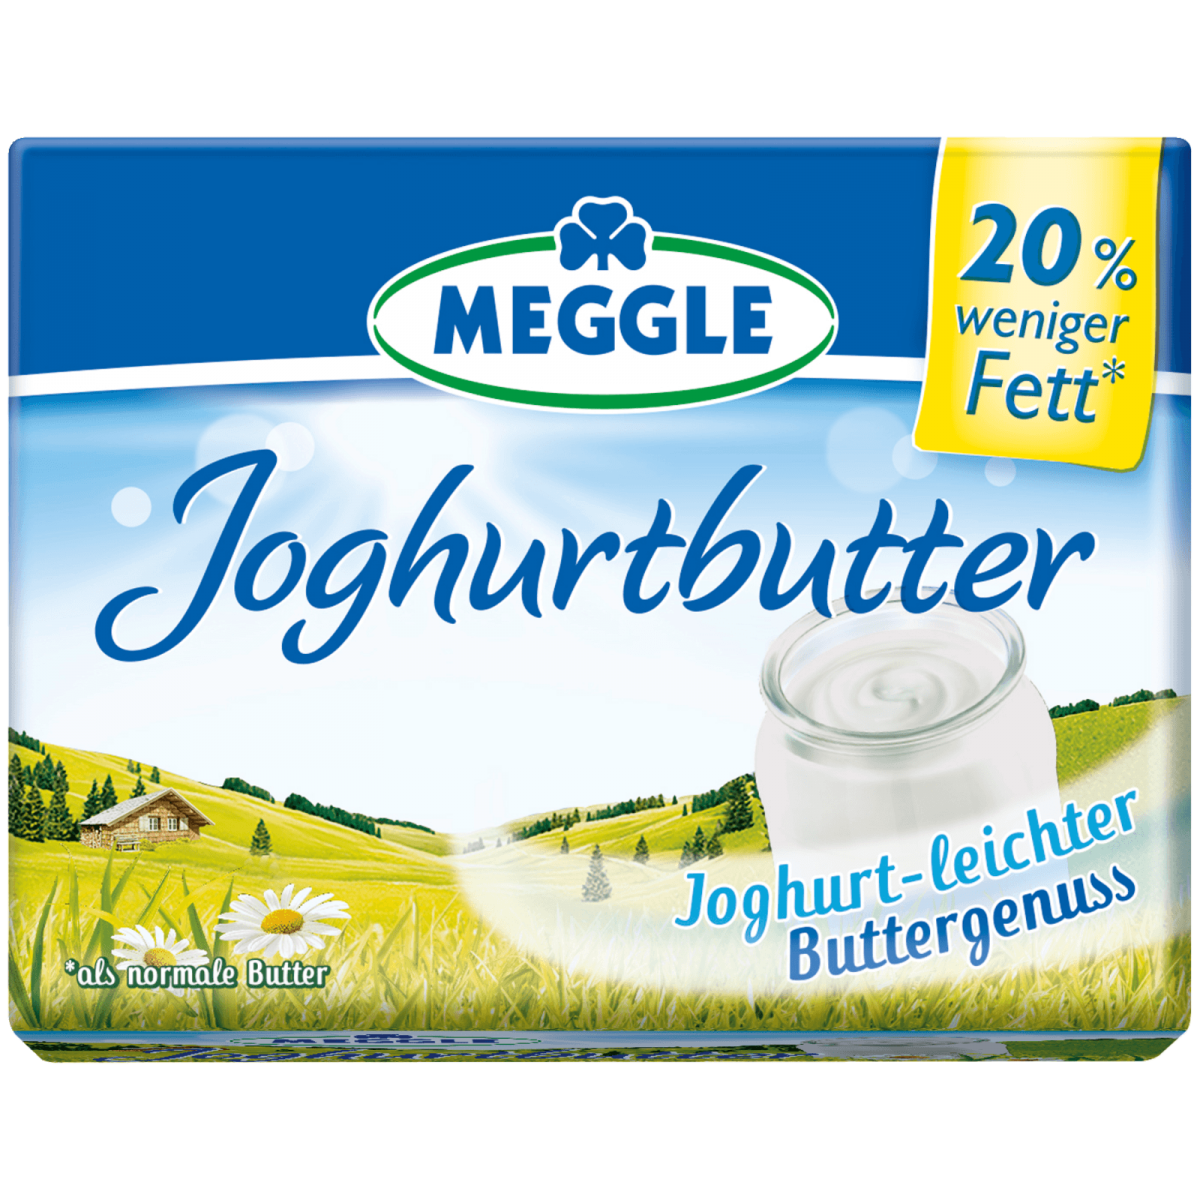 Joghurtbutter